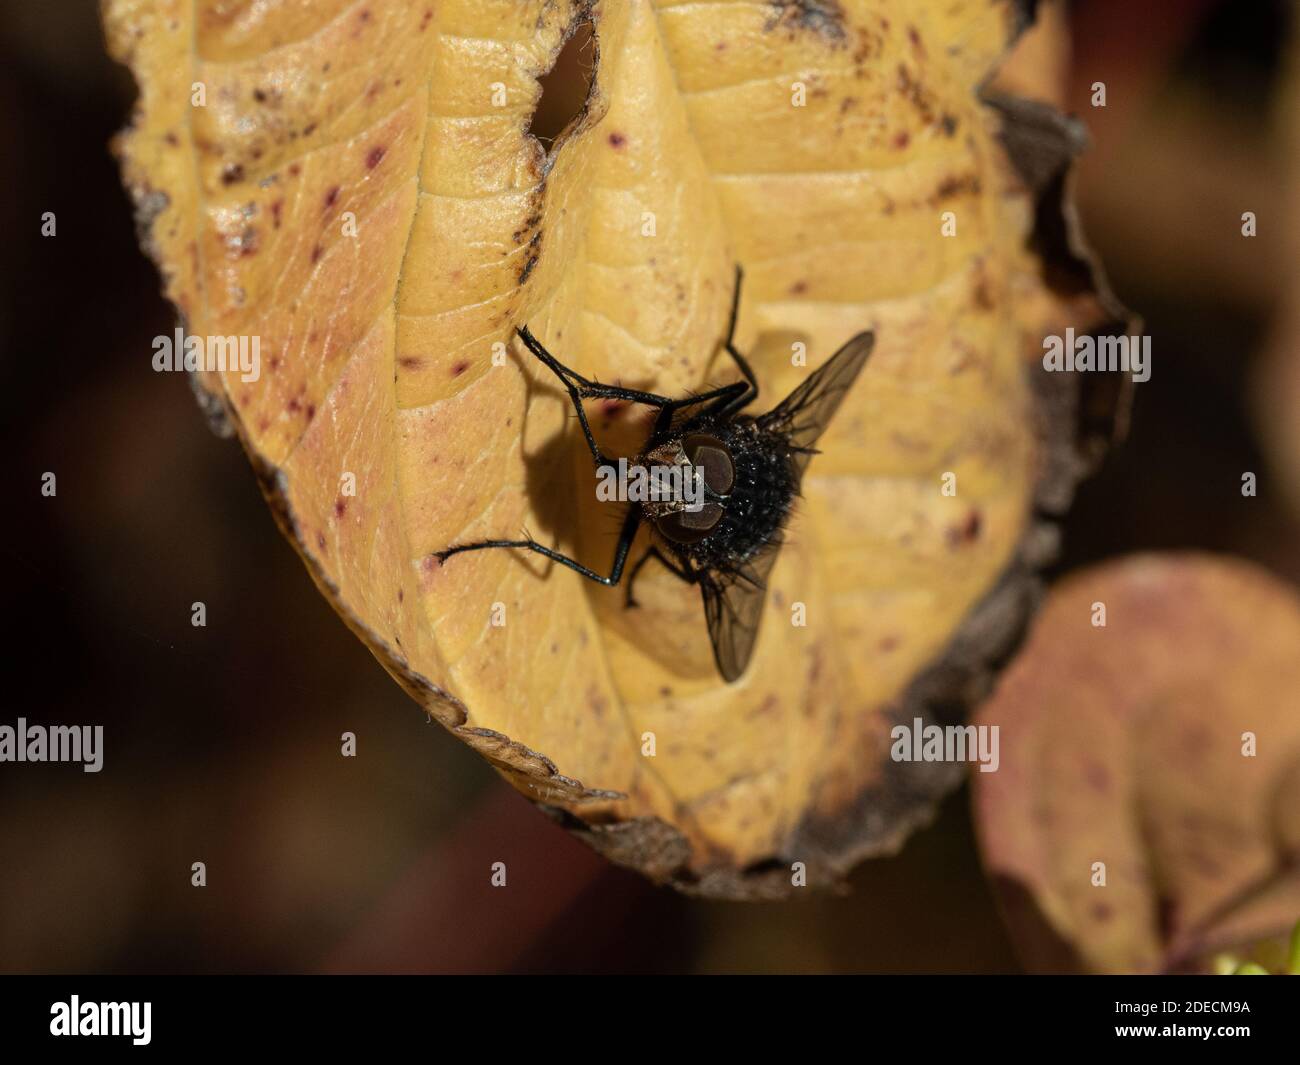 Un primer plano de una mosca que descansa en un otoño hoja que muestra el detalle de sus ojos compuestos Foto de stock